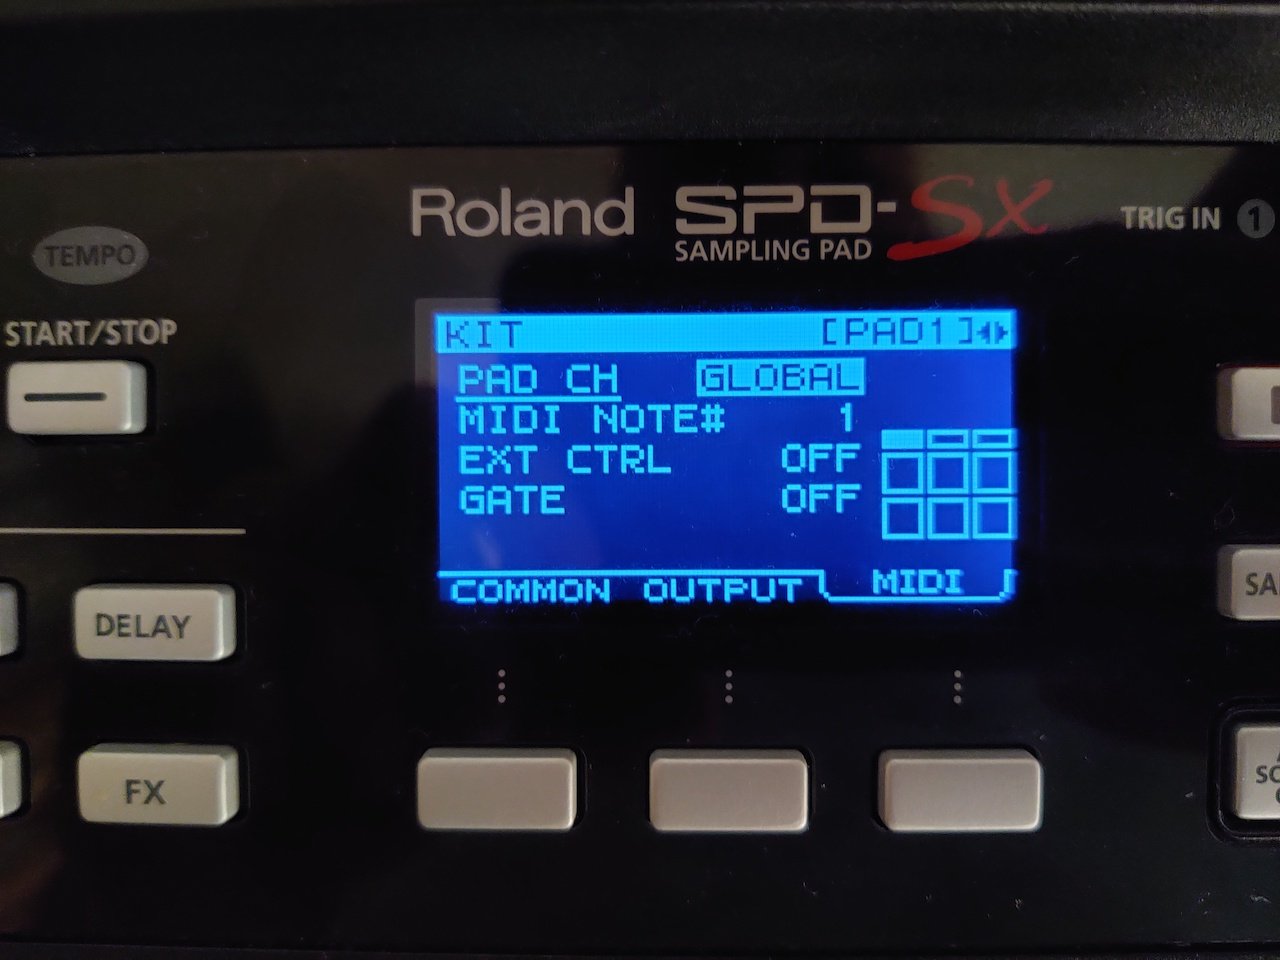 Roland spd-sx downloads